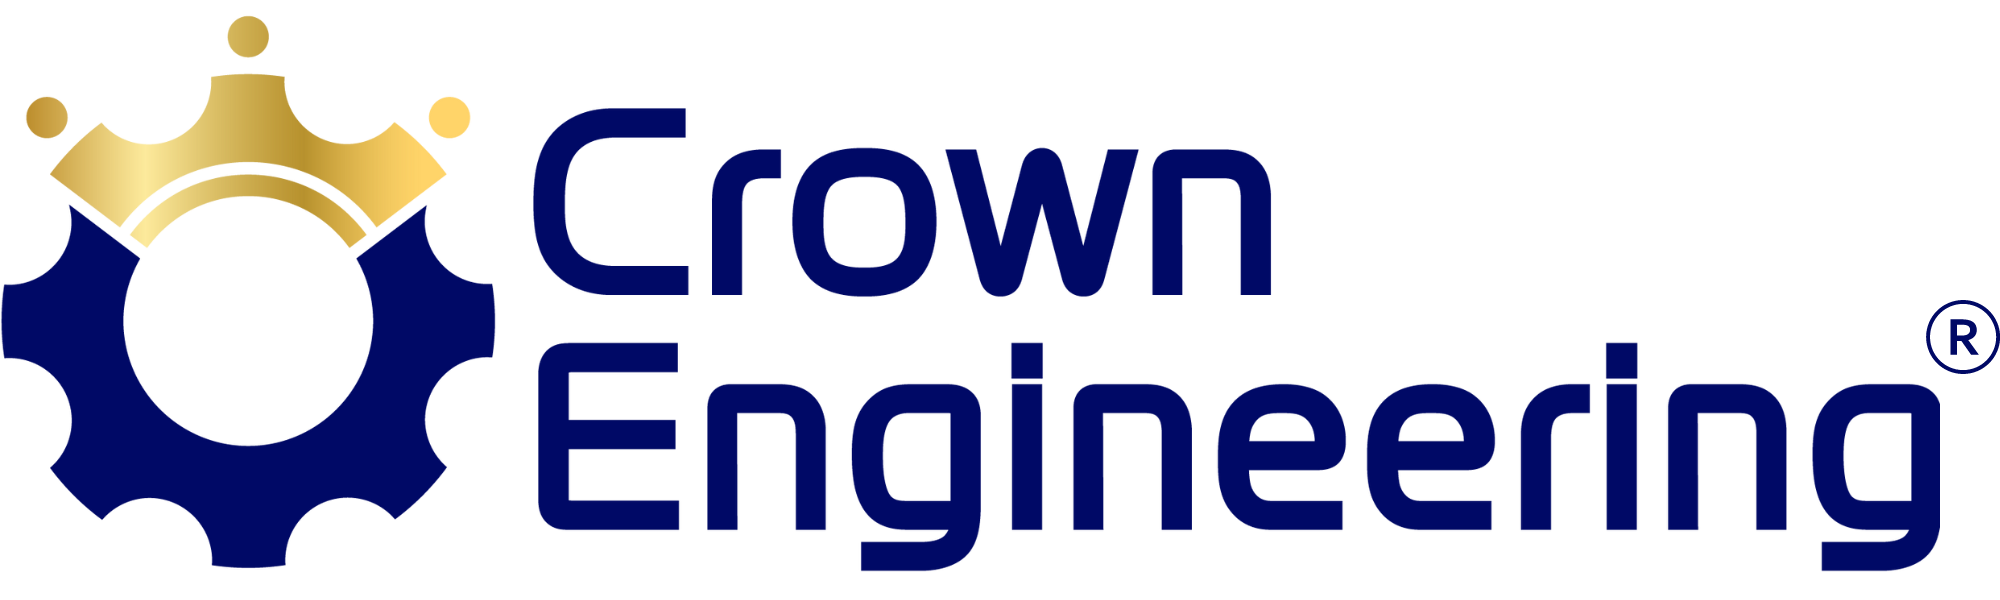 Crown Engineering